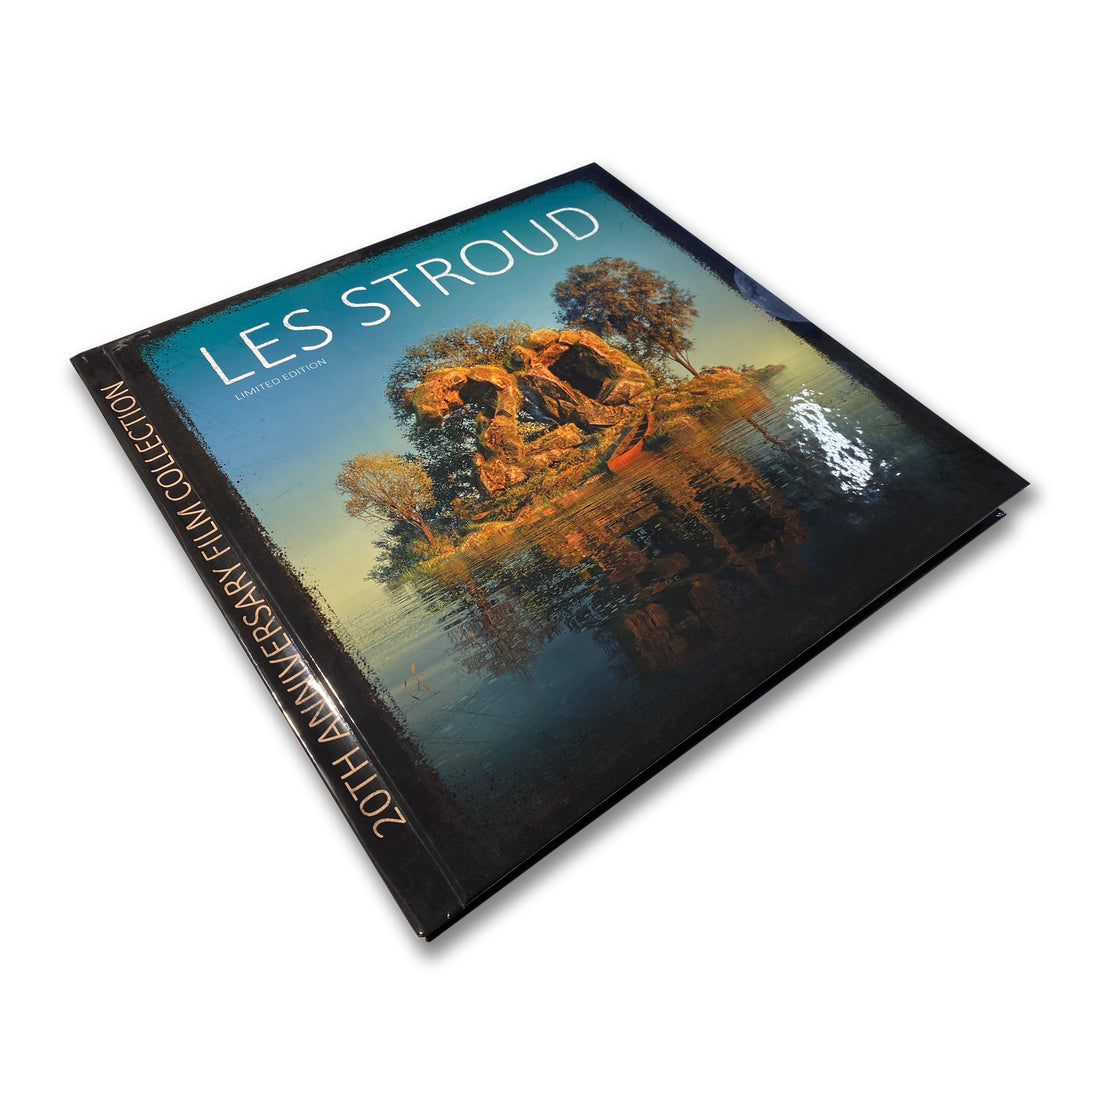 PRE SALE - Survivorman - Les Stroud Films - 20th Anniversary Film Collection